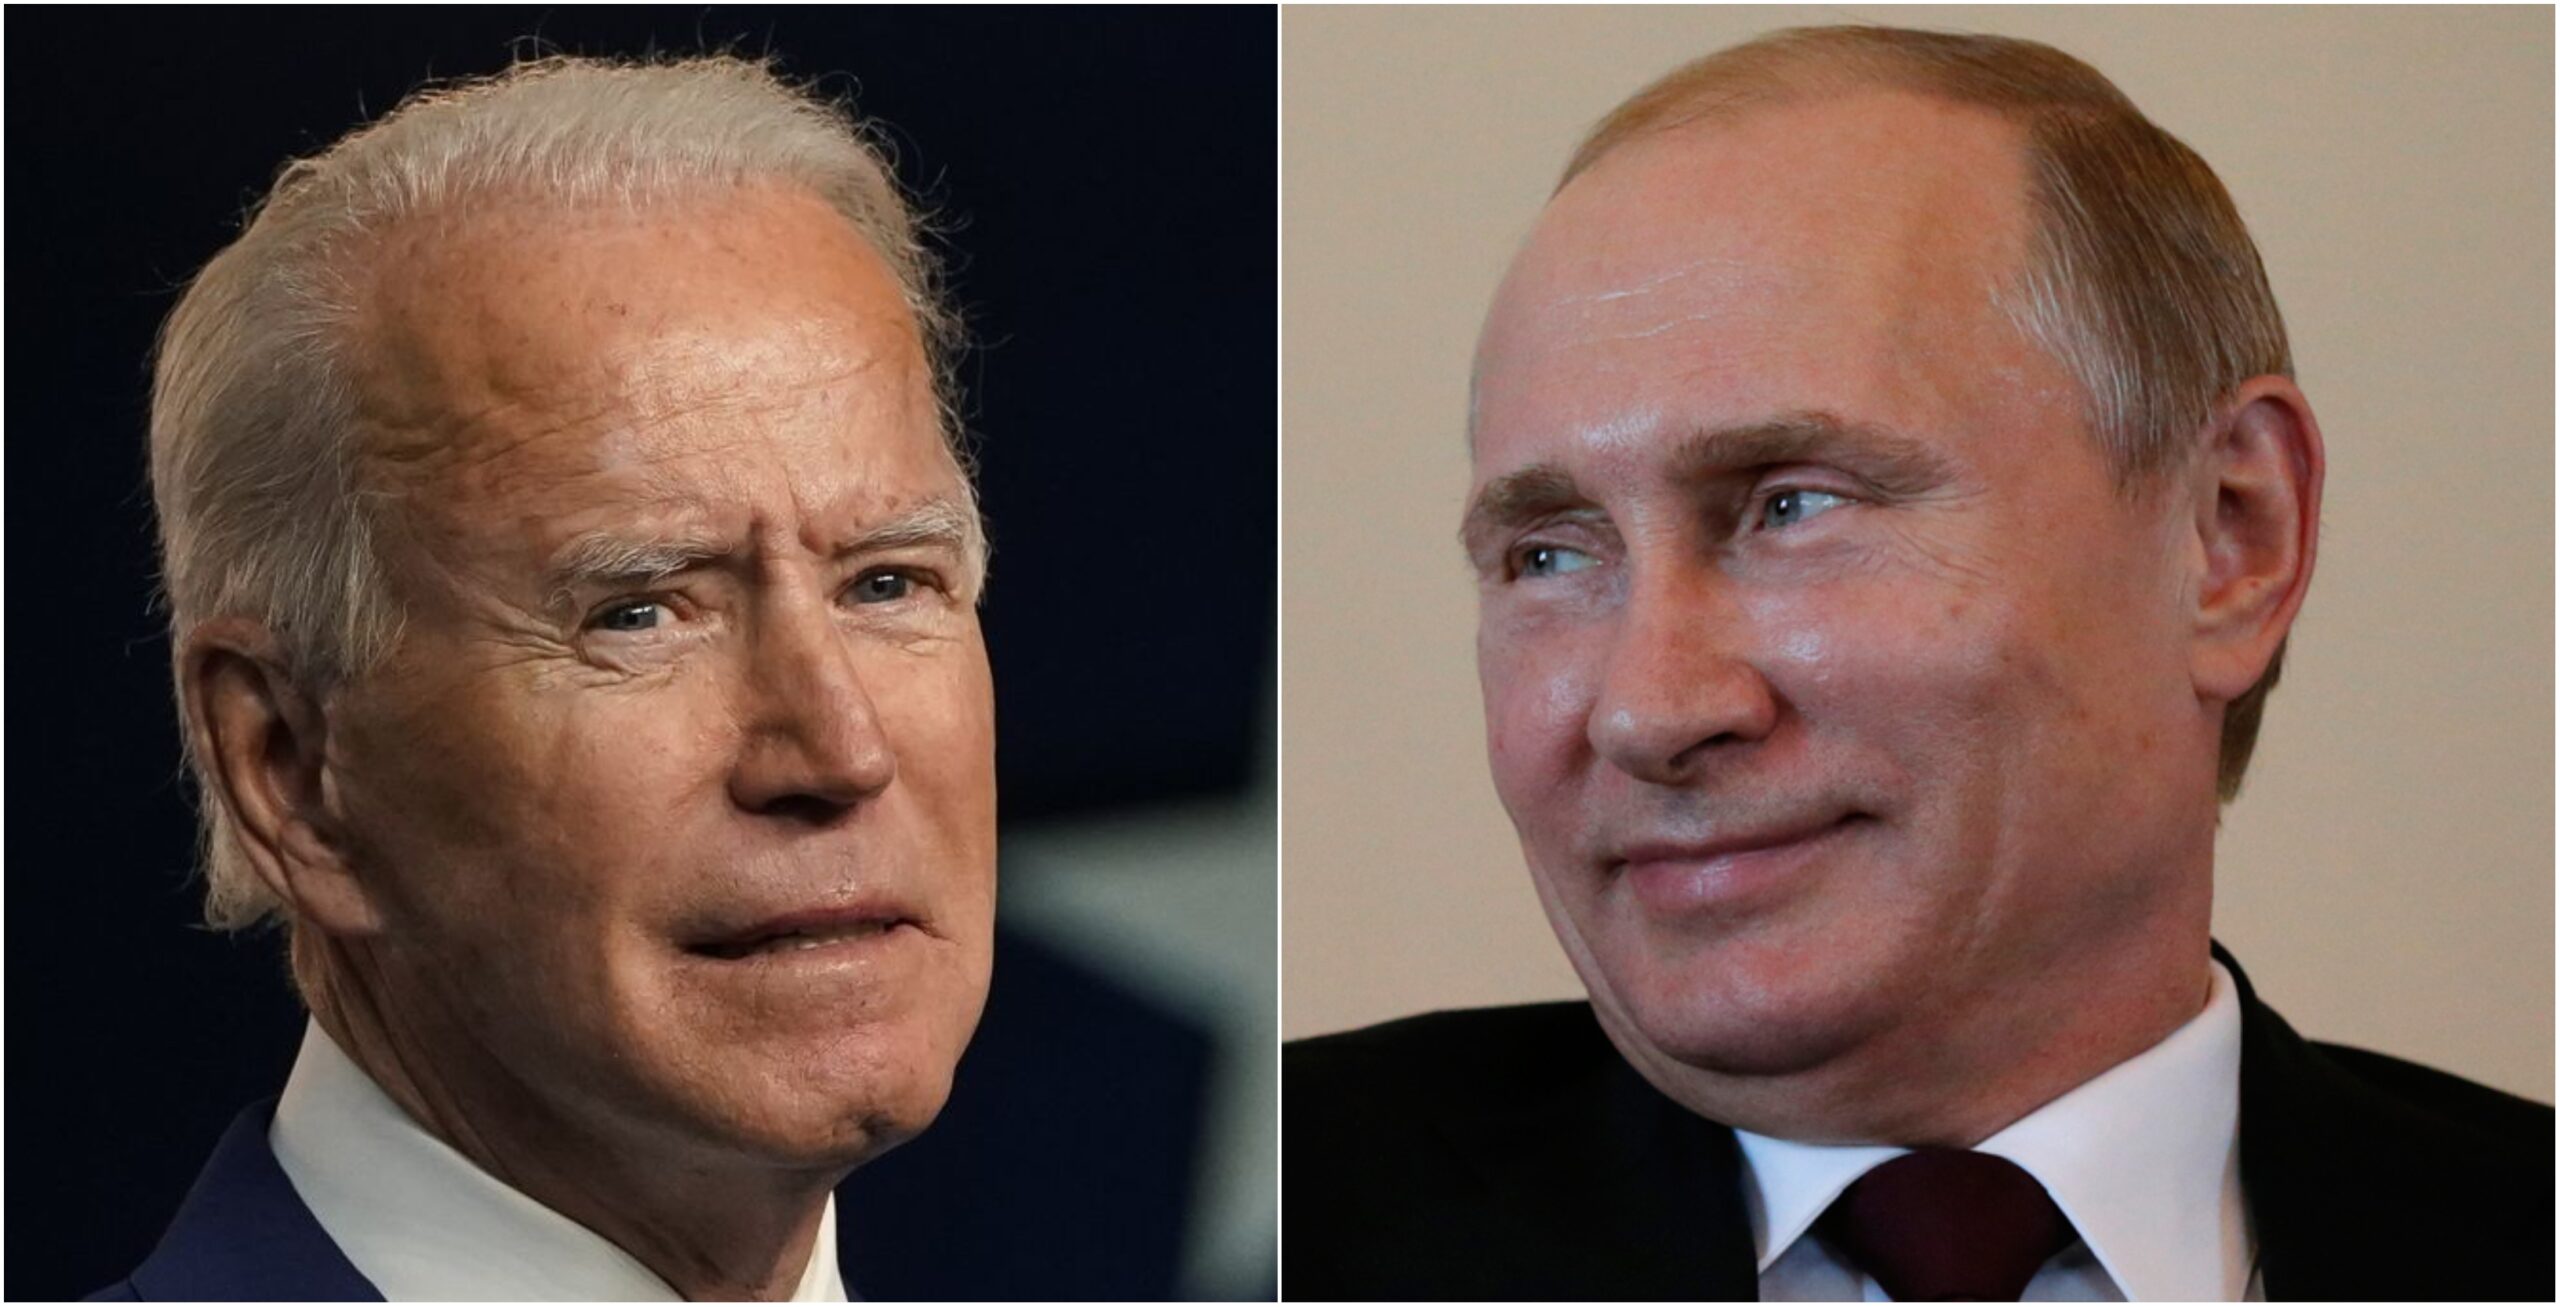 Biden llama “asesino” a Putin; este le desea “que se mantenga saludable”